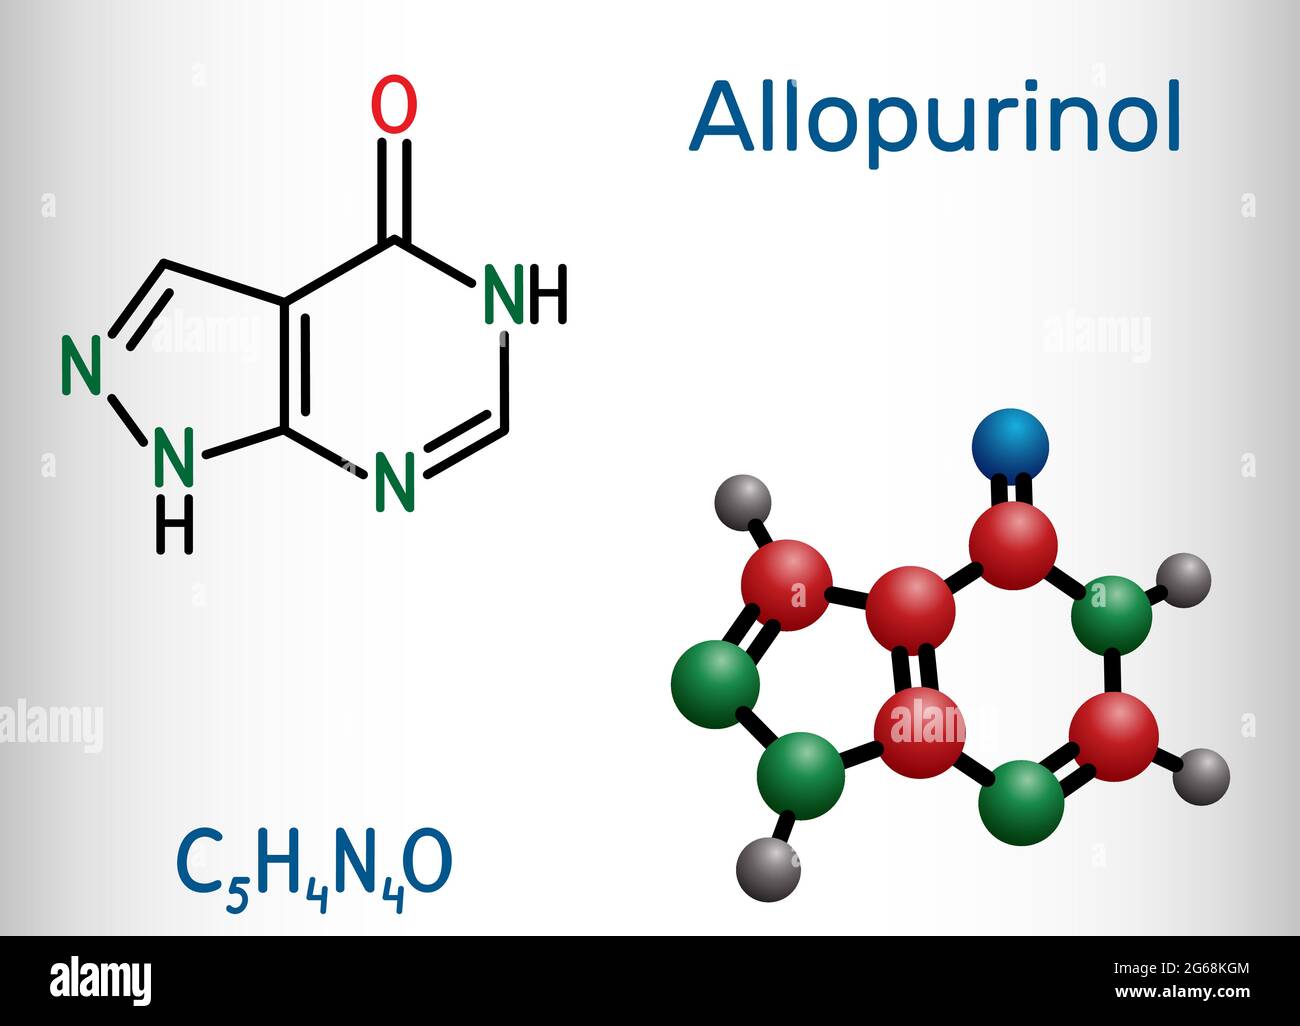 Allopurinol-Molekül. Das Medikament ist ein Xanthinoxidase-Hemmer, der verwendet wird, um hohe Harnsäurespiegel im Blut zu senken. Strukturelle chemische Formel und Molekülmodell Stock Vektor